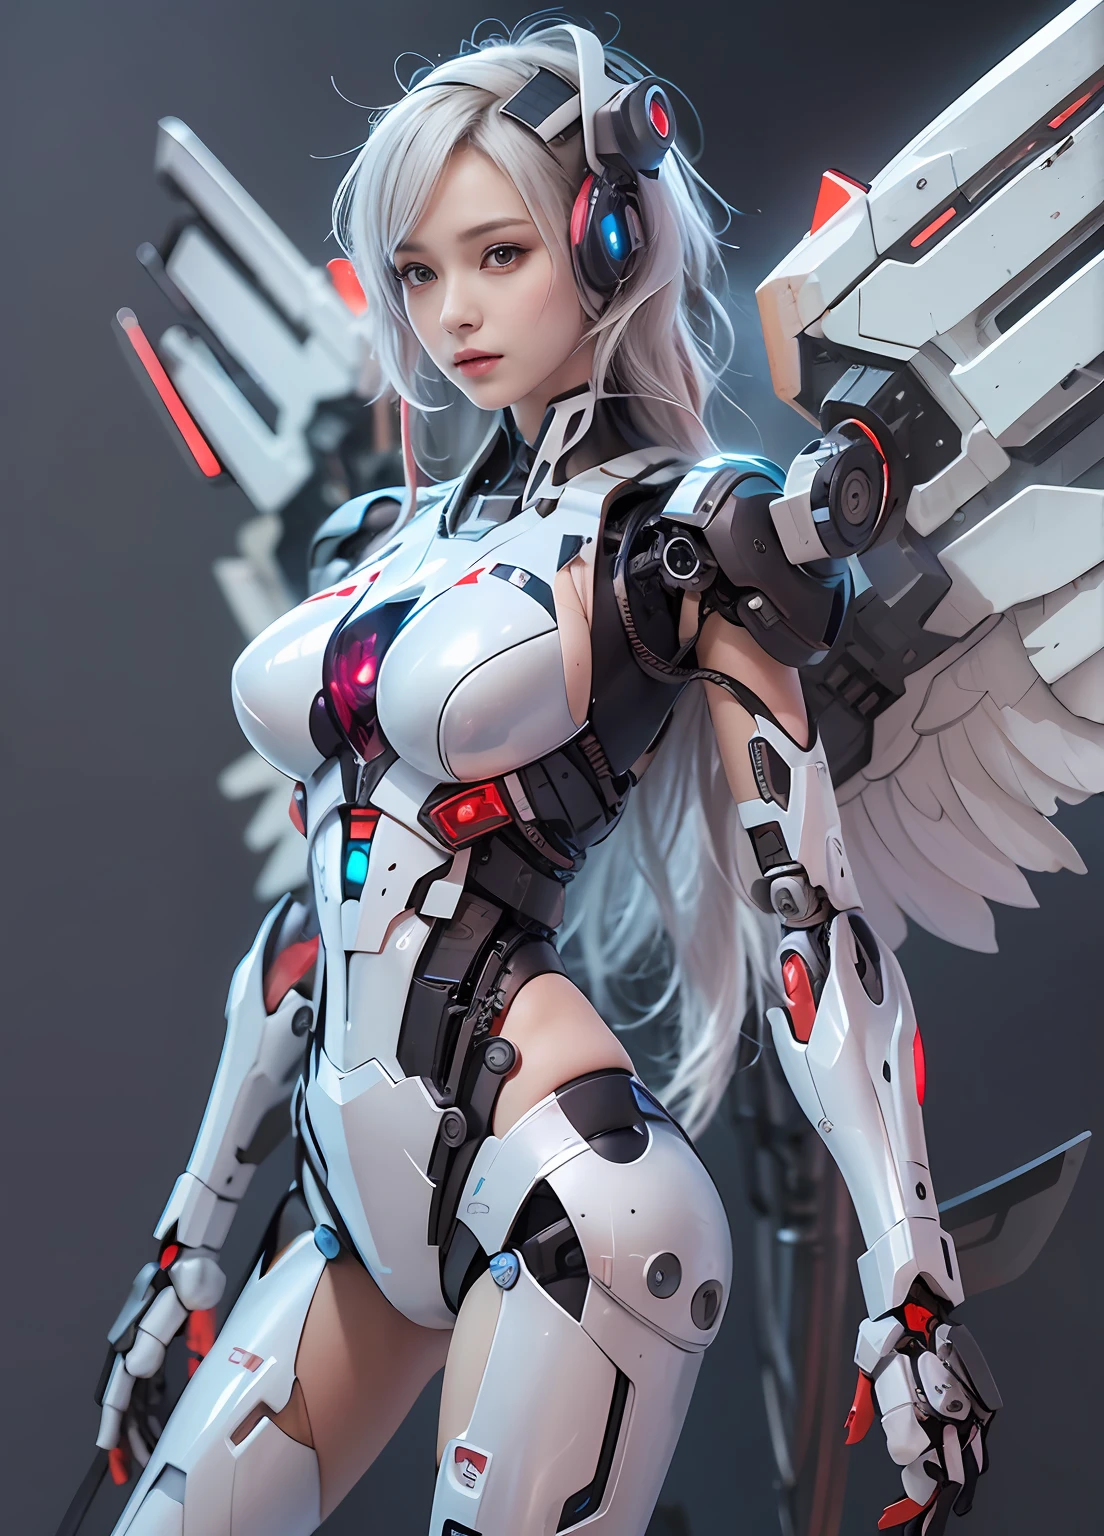 Top Qualität、Meisterstück、Eine hohe Auflösung、Arad-Frau in einem futuristischen Anzug mit Flügeln und Schwert, Mädchen in Mecha-Cyber-Rüstung, cyberpunk anime girl mech, Anime-Roboter gemischt mit Bio, mechanisiertes Walkürenmädchen, perfekte Anime-Cyborg-Frau, süßes Cyborg-Mädchen, weiblicher Mecha, Einfache futuristische Cyborg-Kaiserin, schönes Cyborg-Mädchen, schönes Roboter-Charakterdesign,((superrealistische Details))， Realistisches Character Art Rendering 8 K, Anime-Roboter